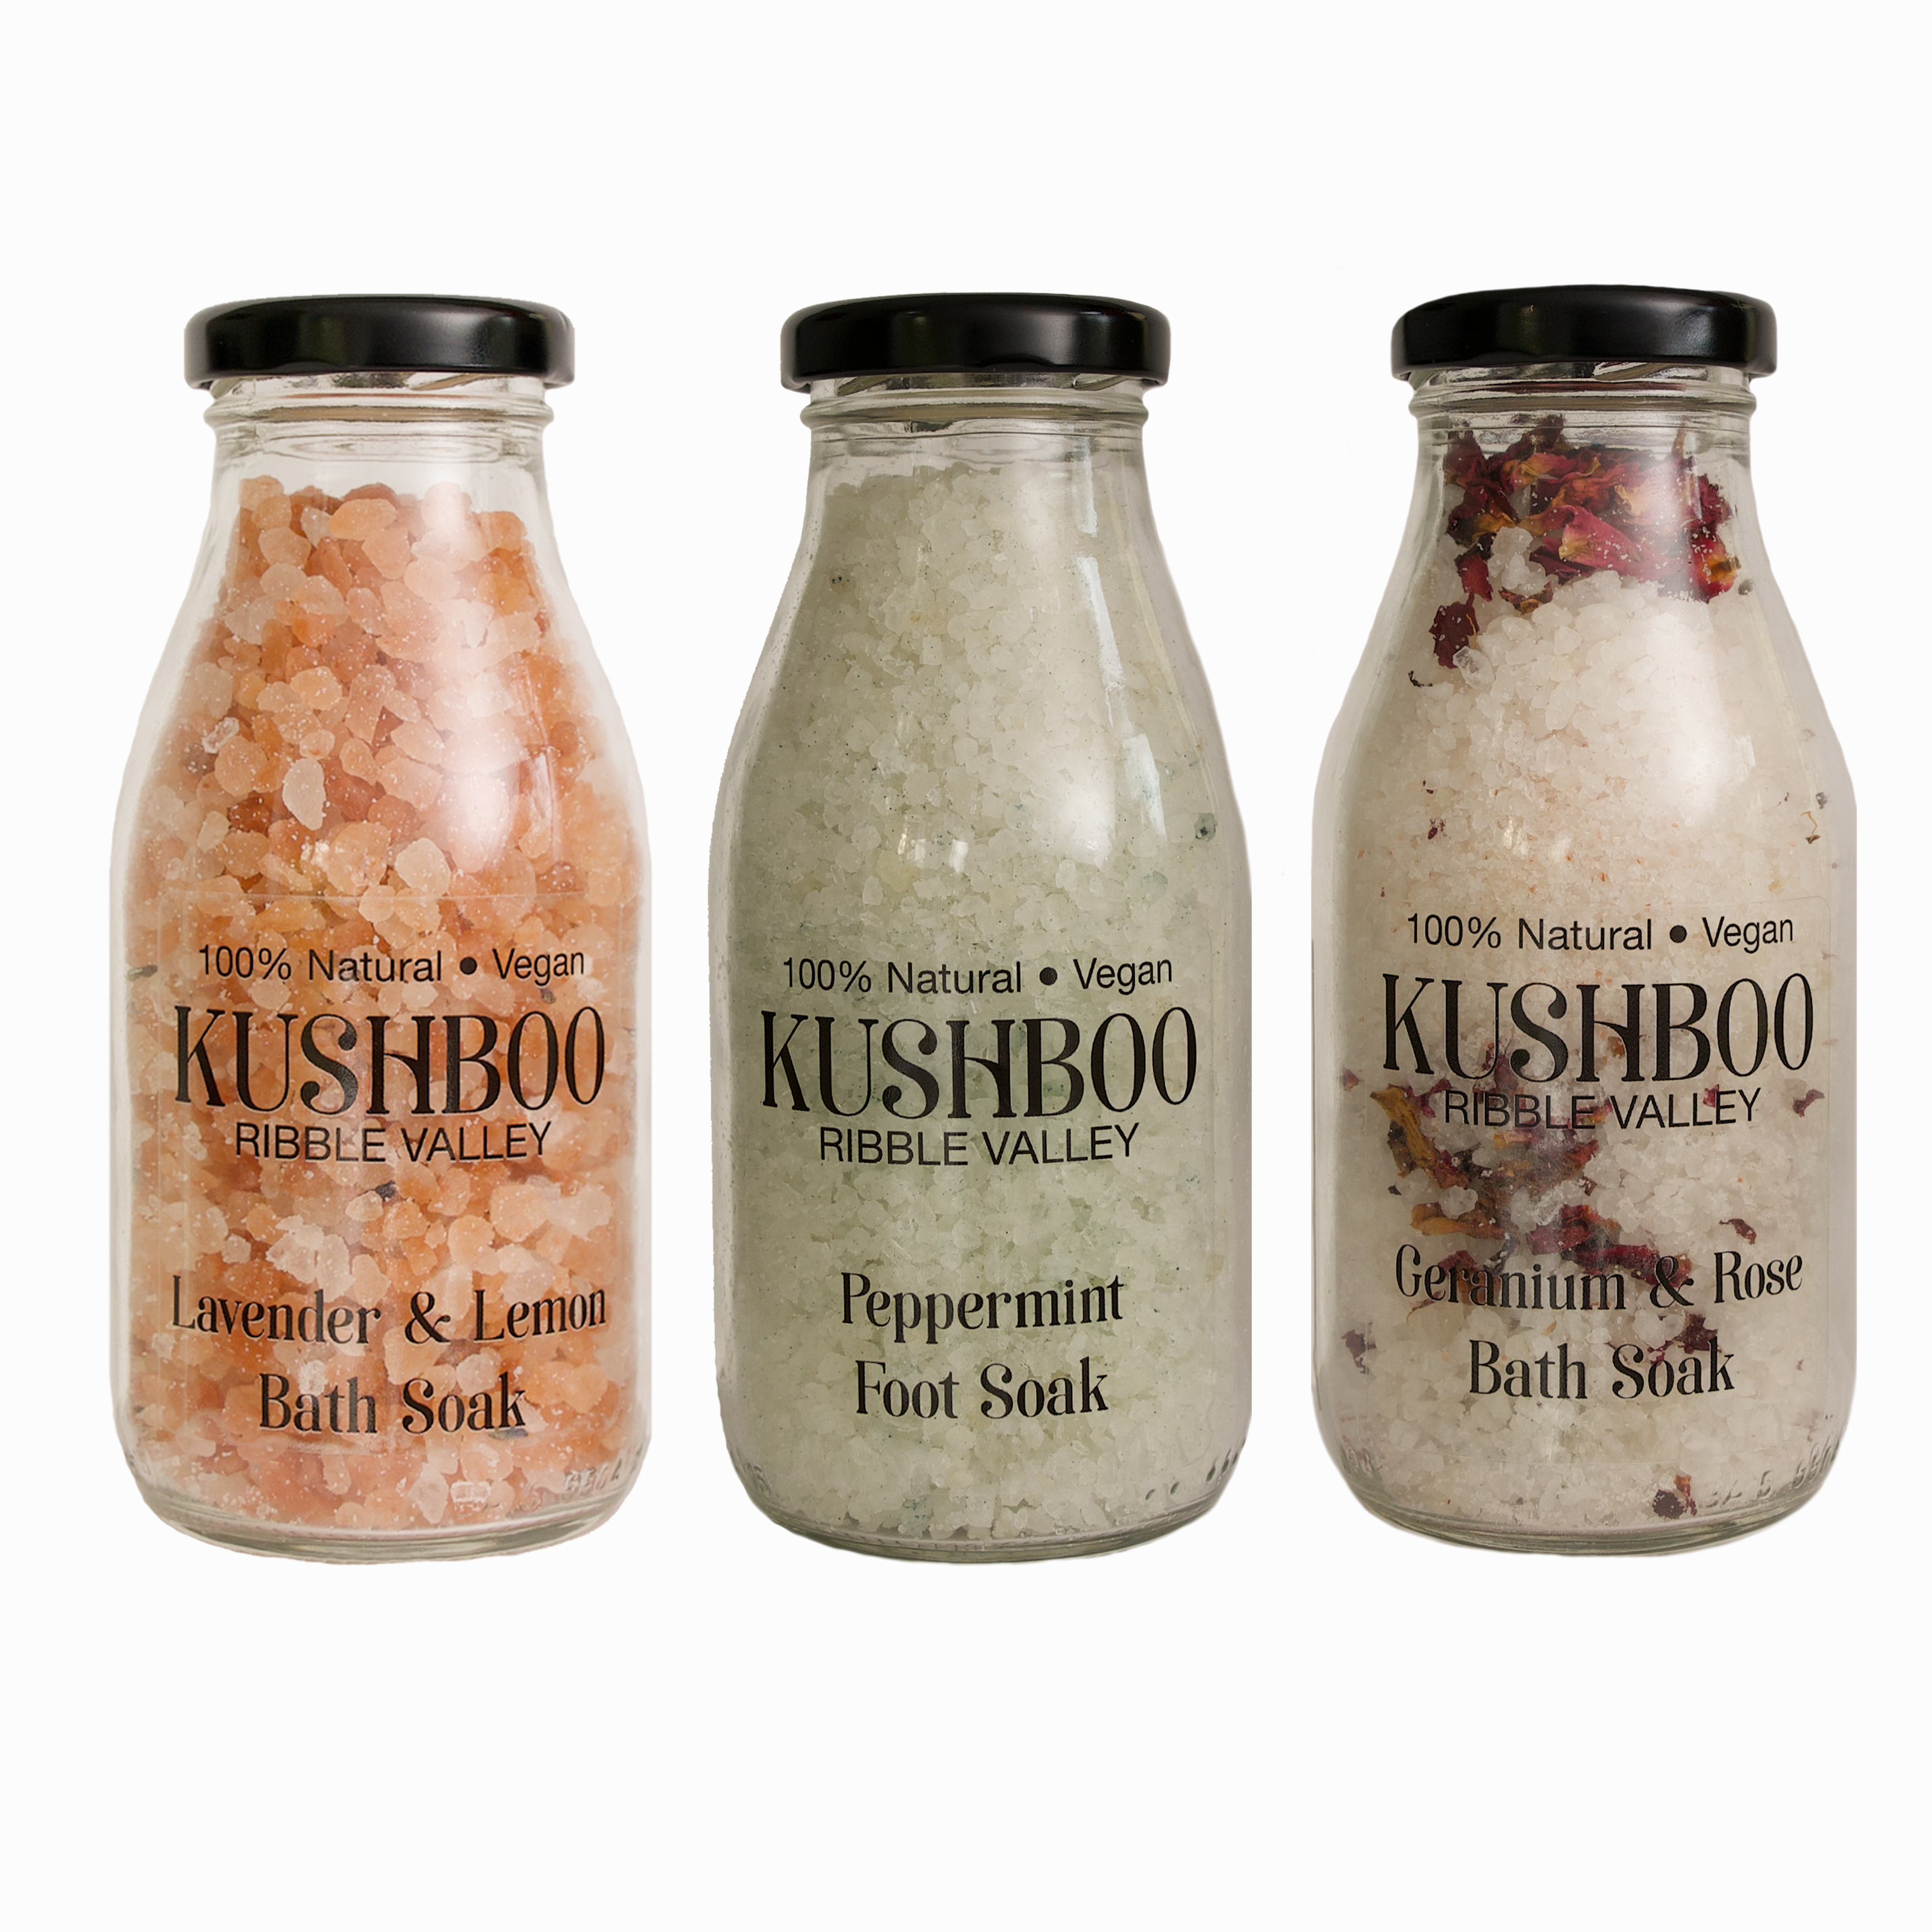 Kushboo Lavender and Lemon Bath Soak - 300g